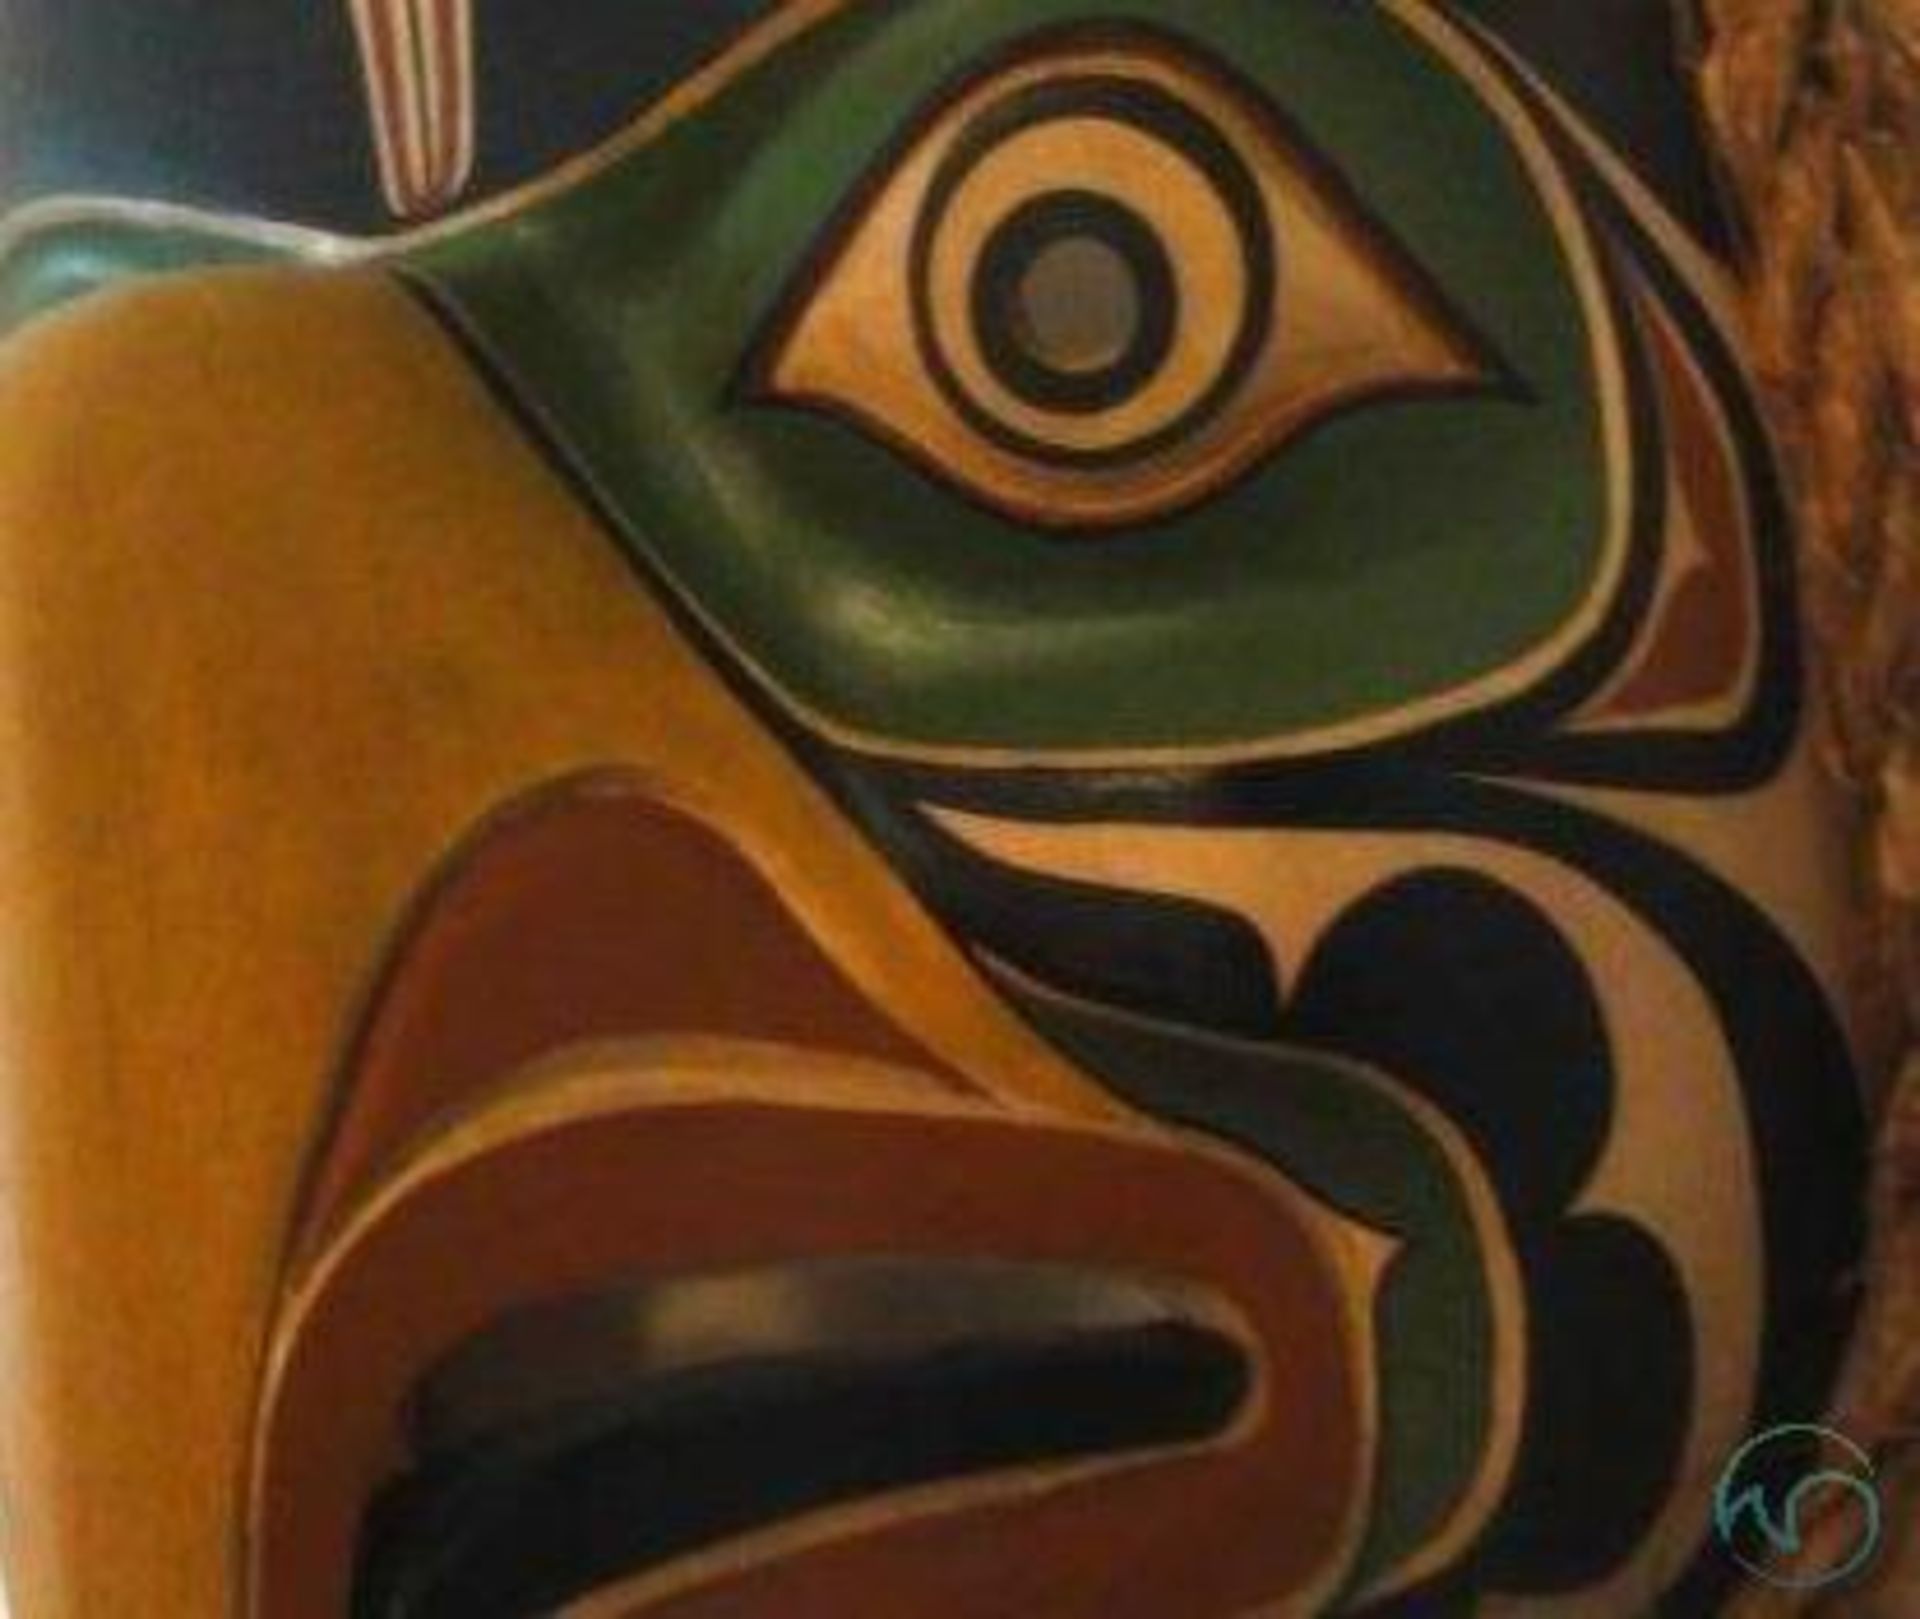 Northwest Indian signed mask - Image 5 of 5